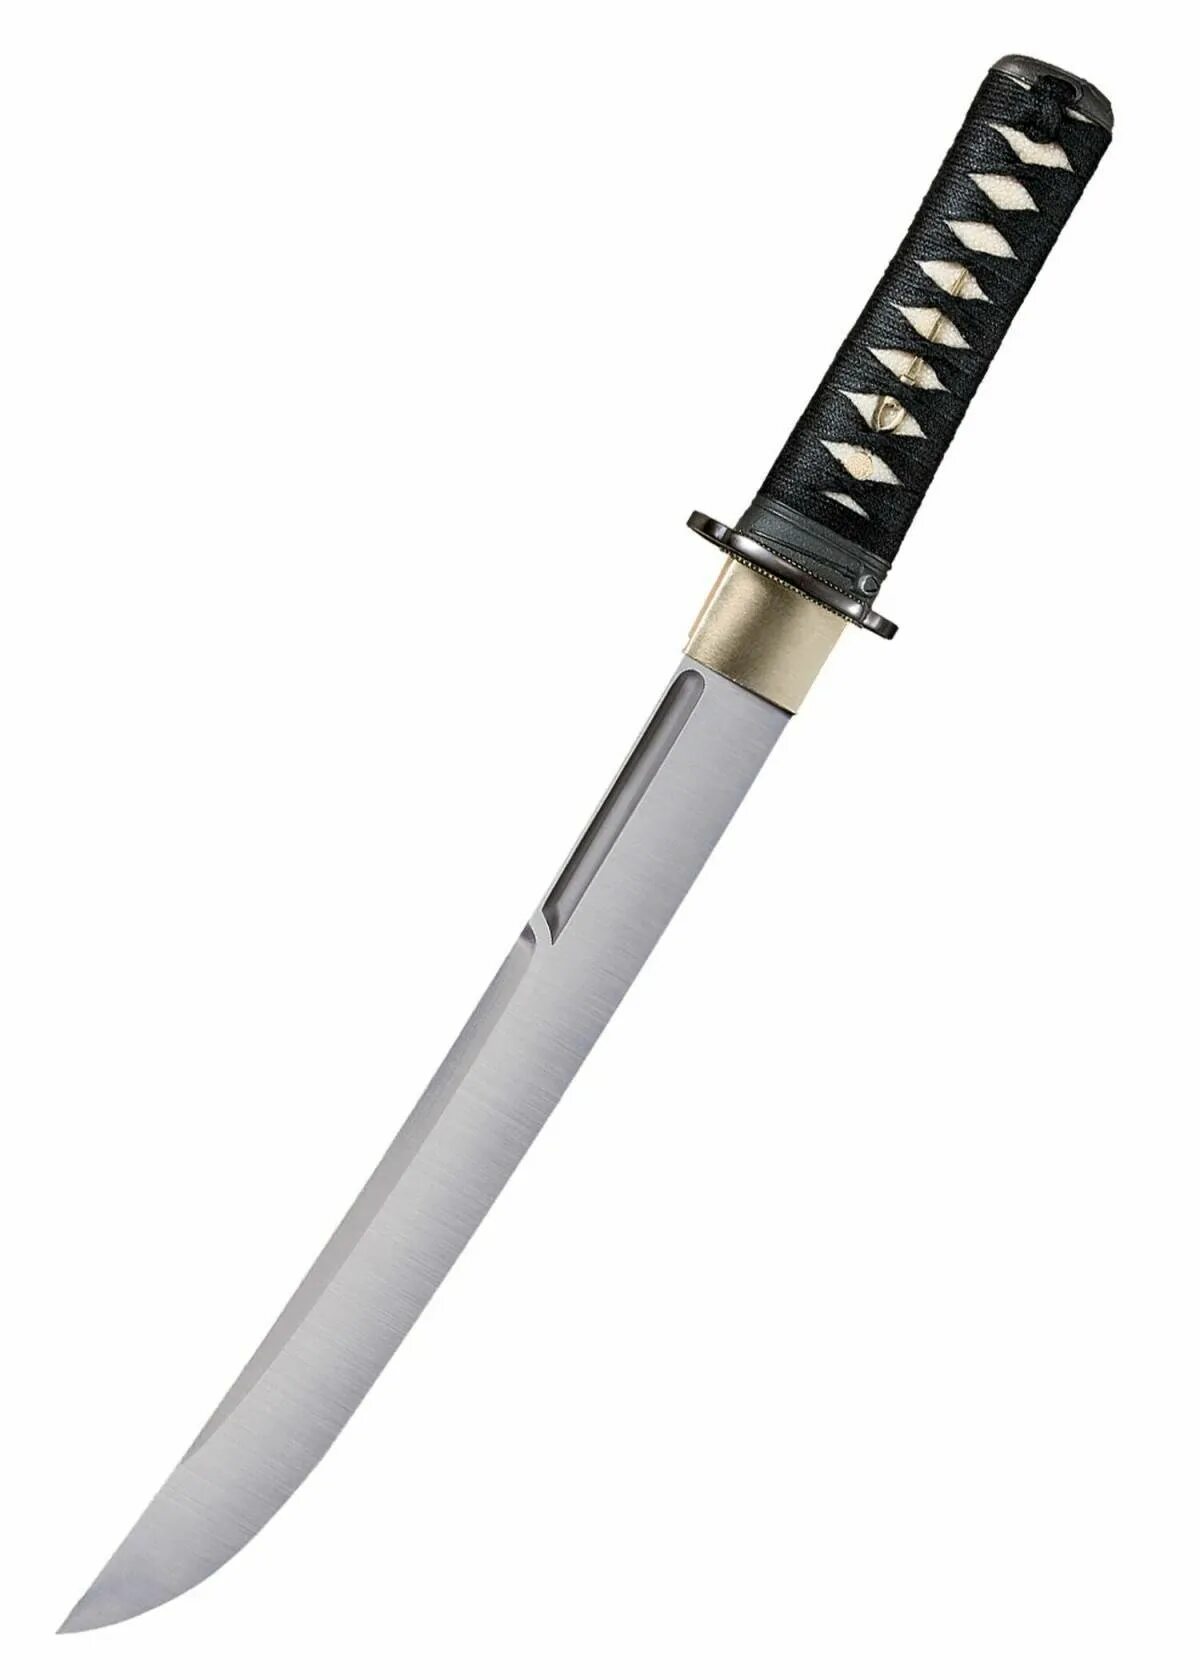 Танта. Танто меч самурая. Танто кинжал самурая. Нож самурая танто. Японский клинок танто.